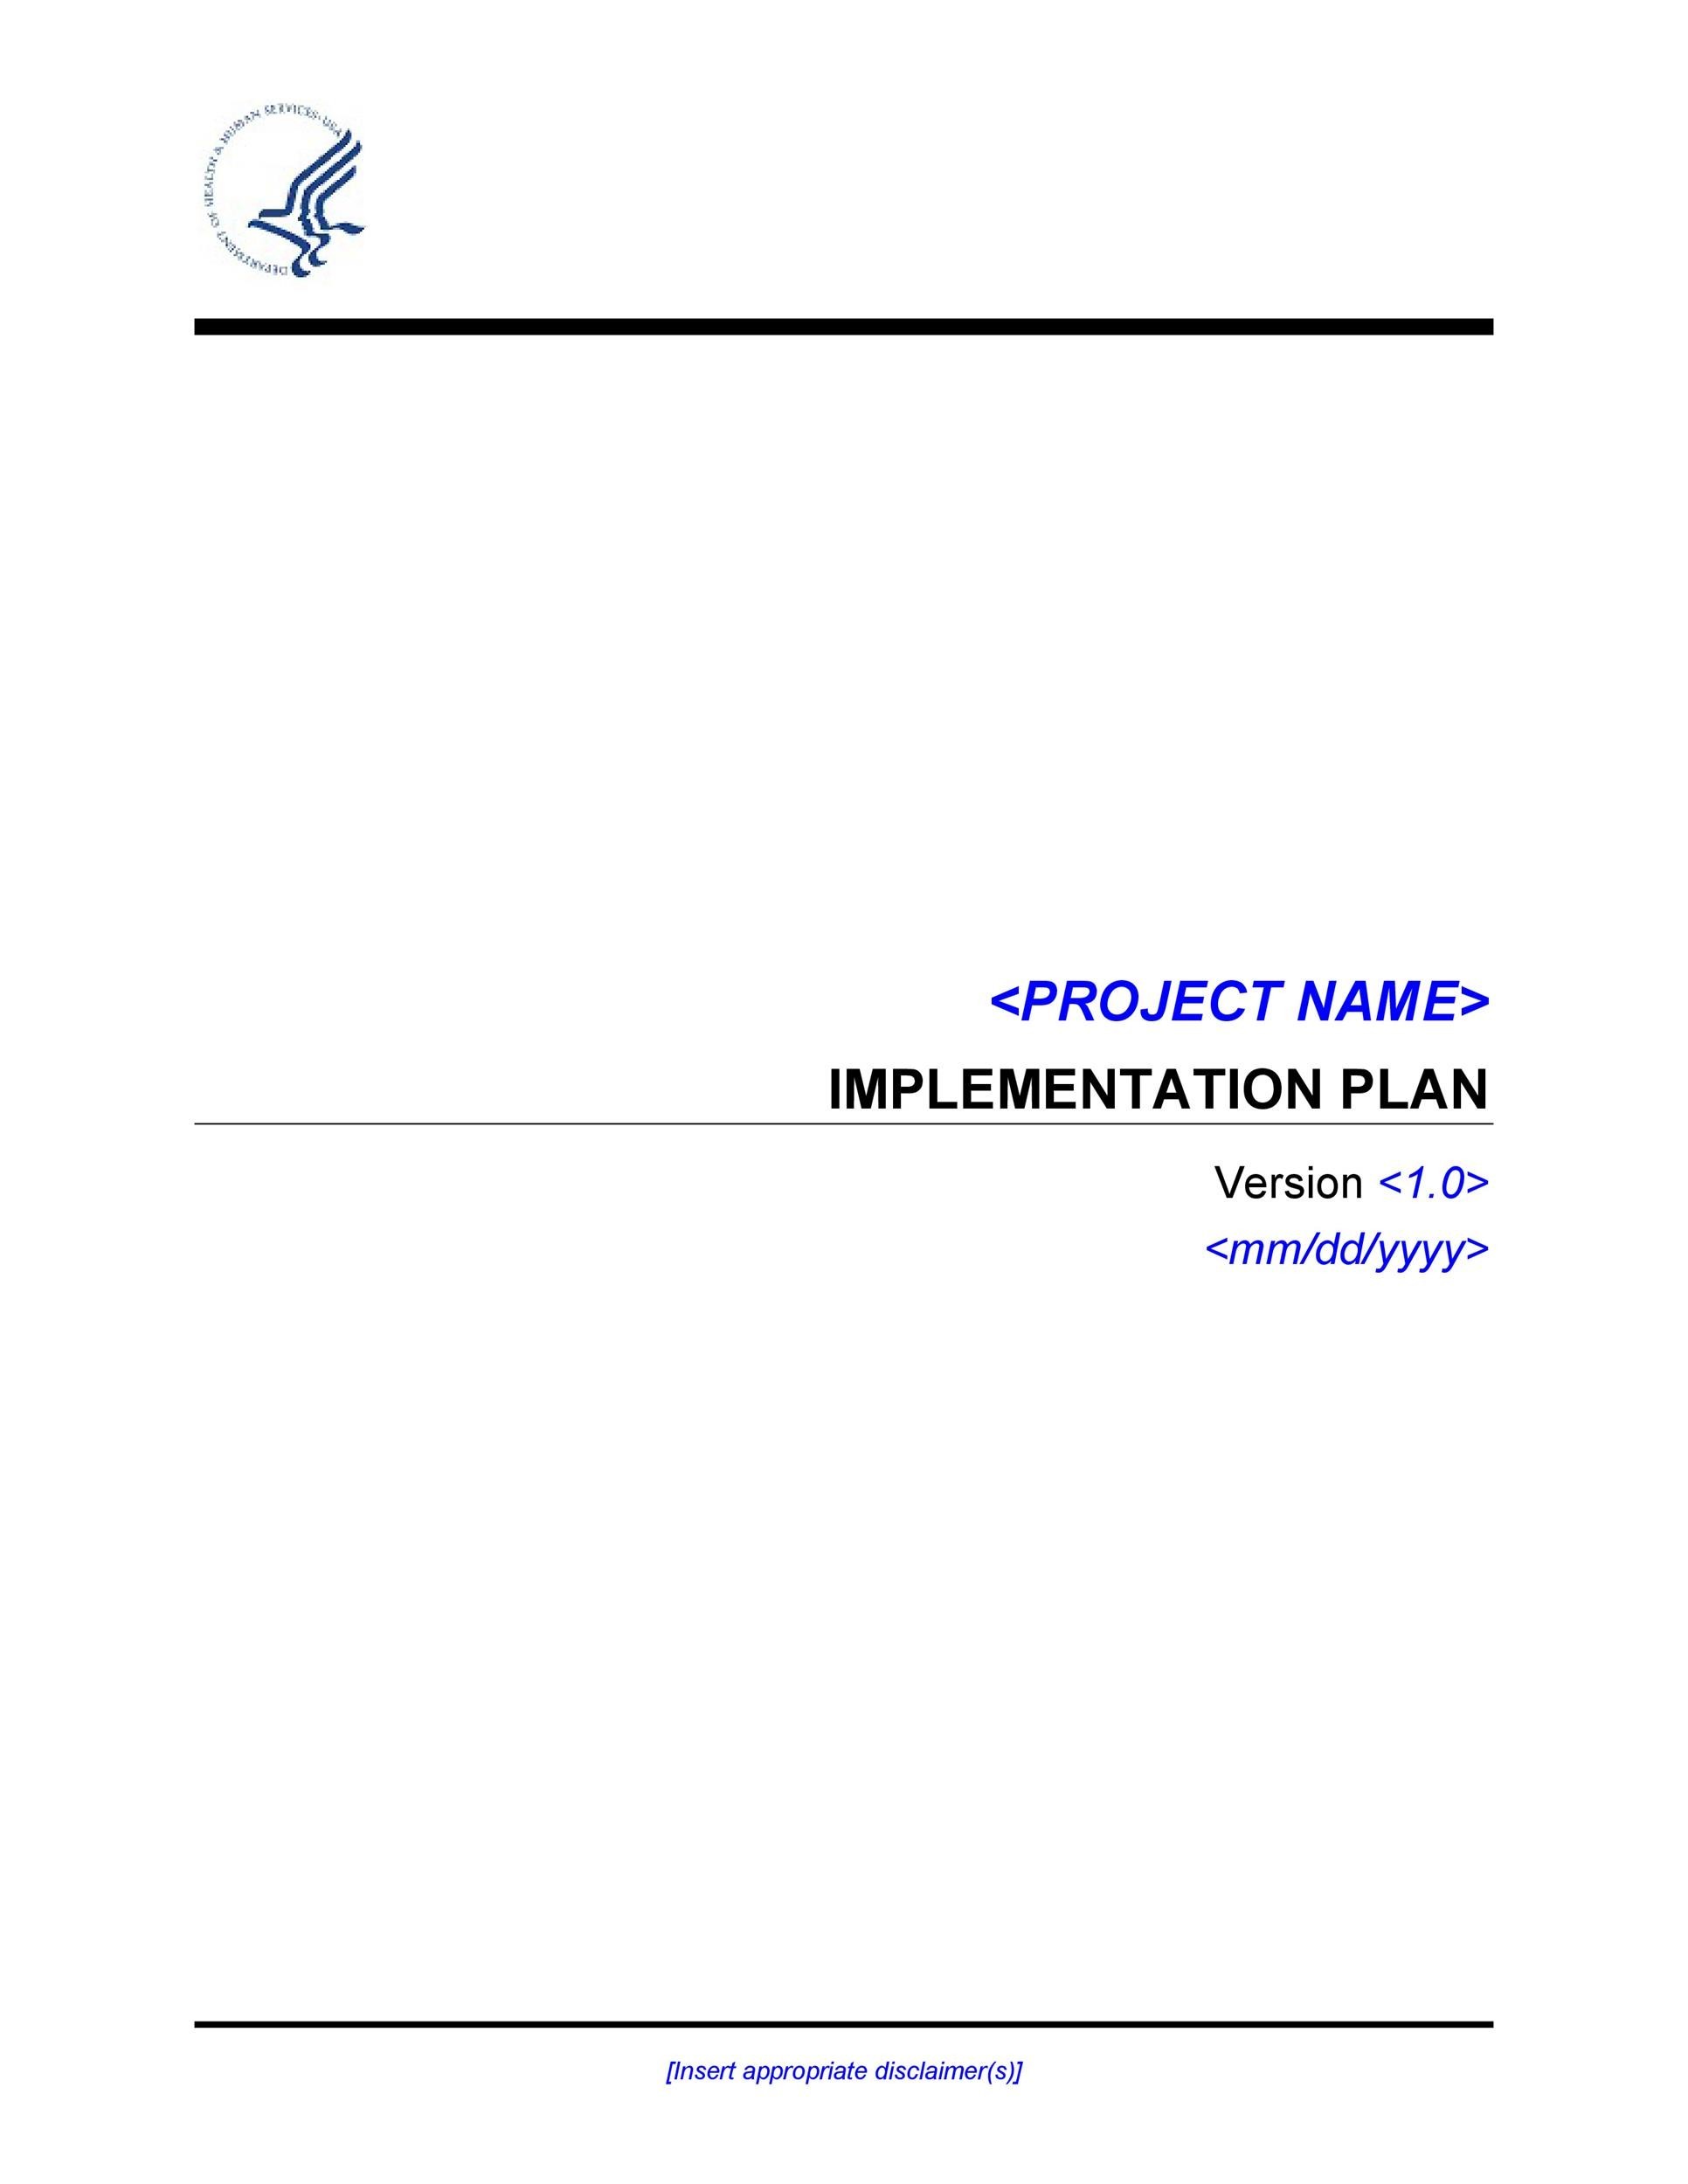 Free implementation plan 10